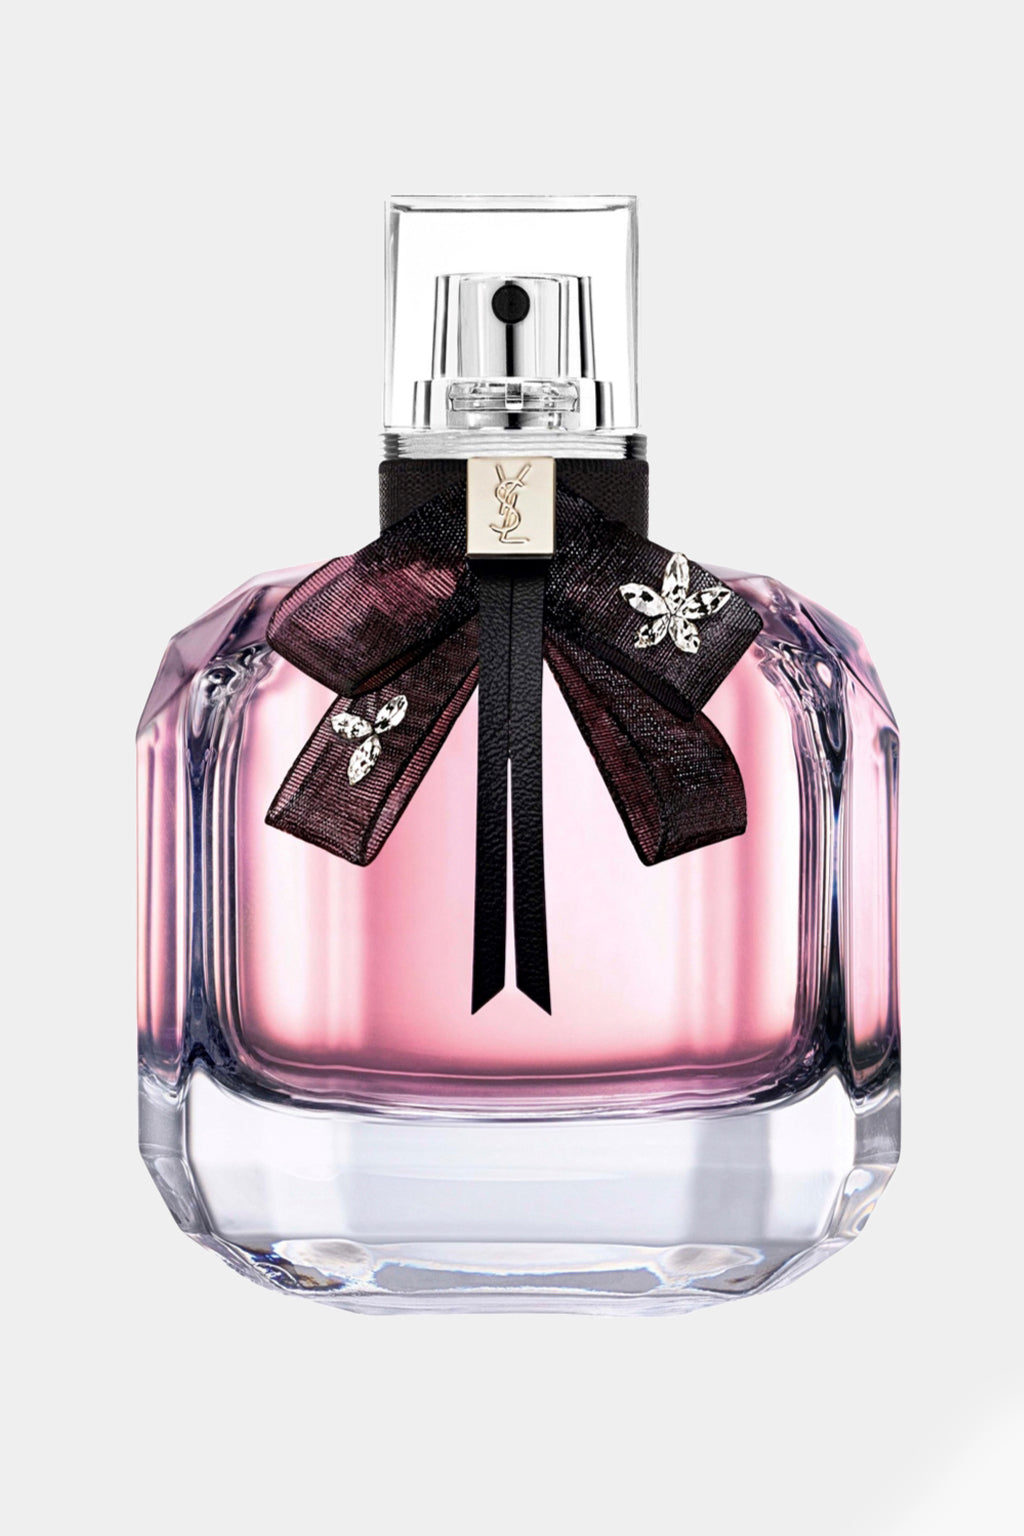 Yves Saint Laurent - Mon Paris Eau De Parfum